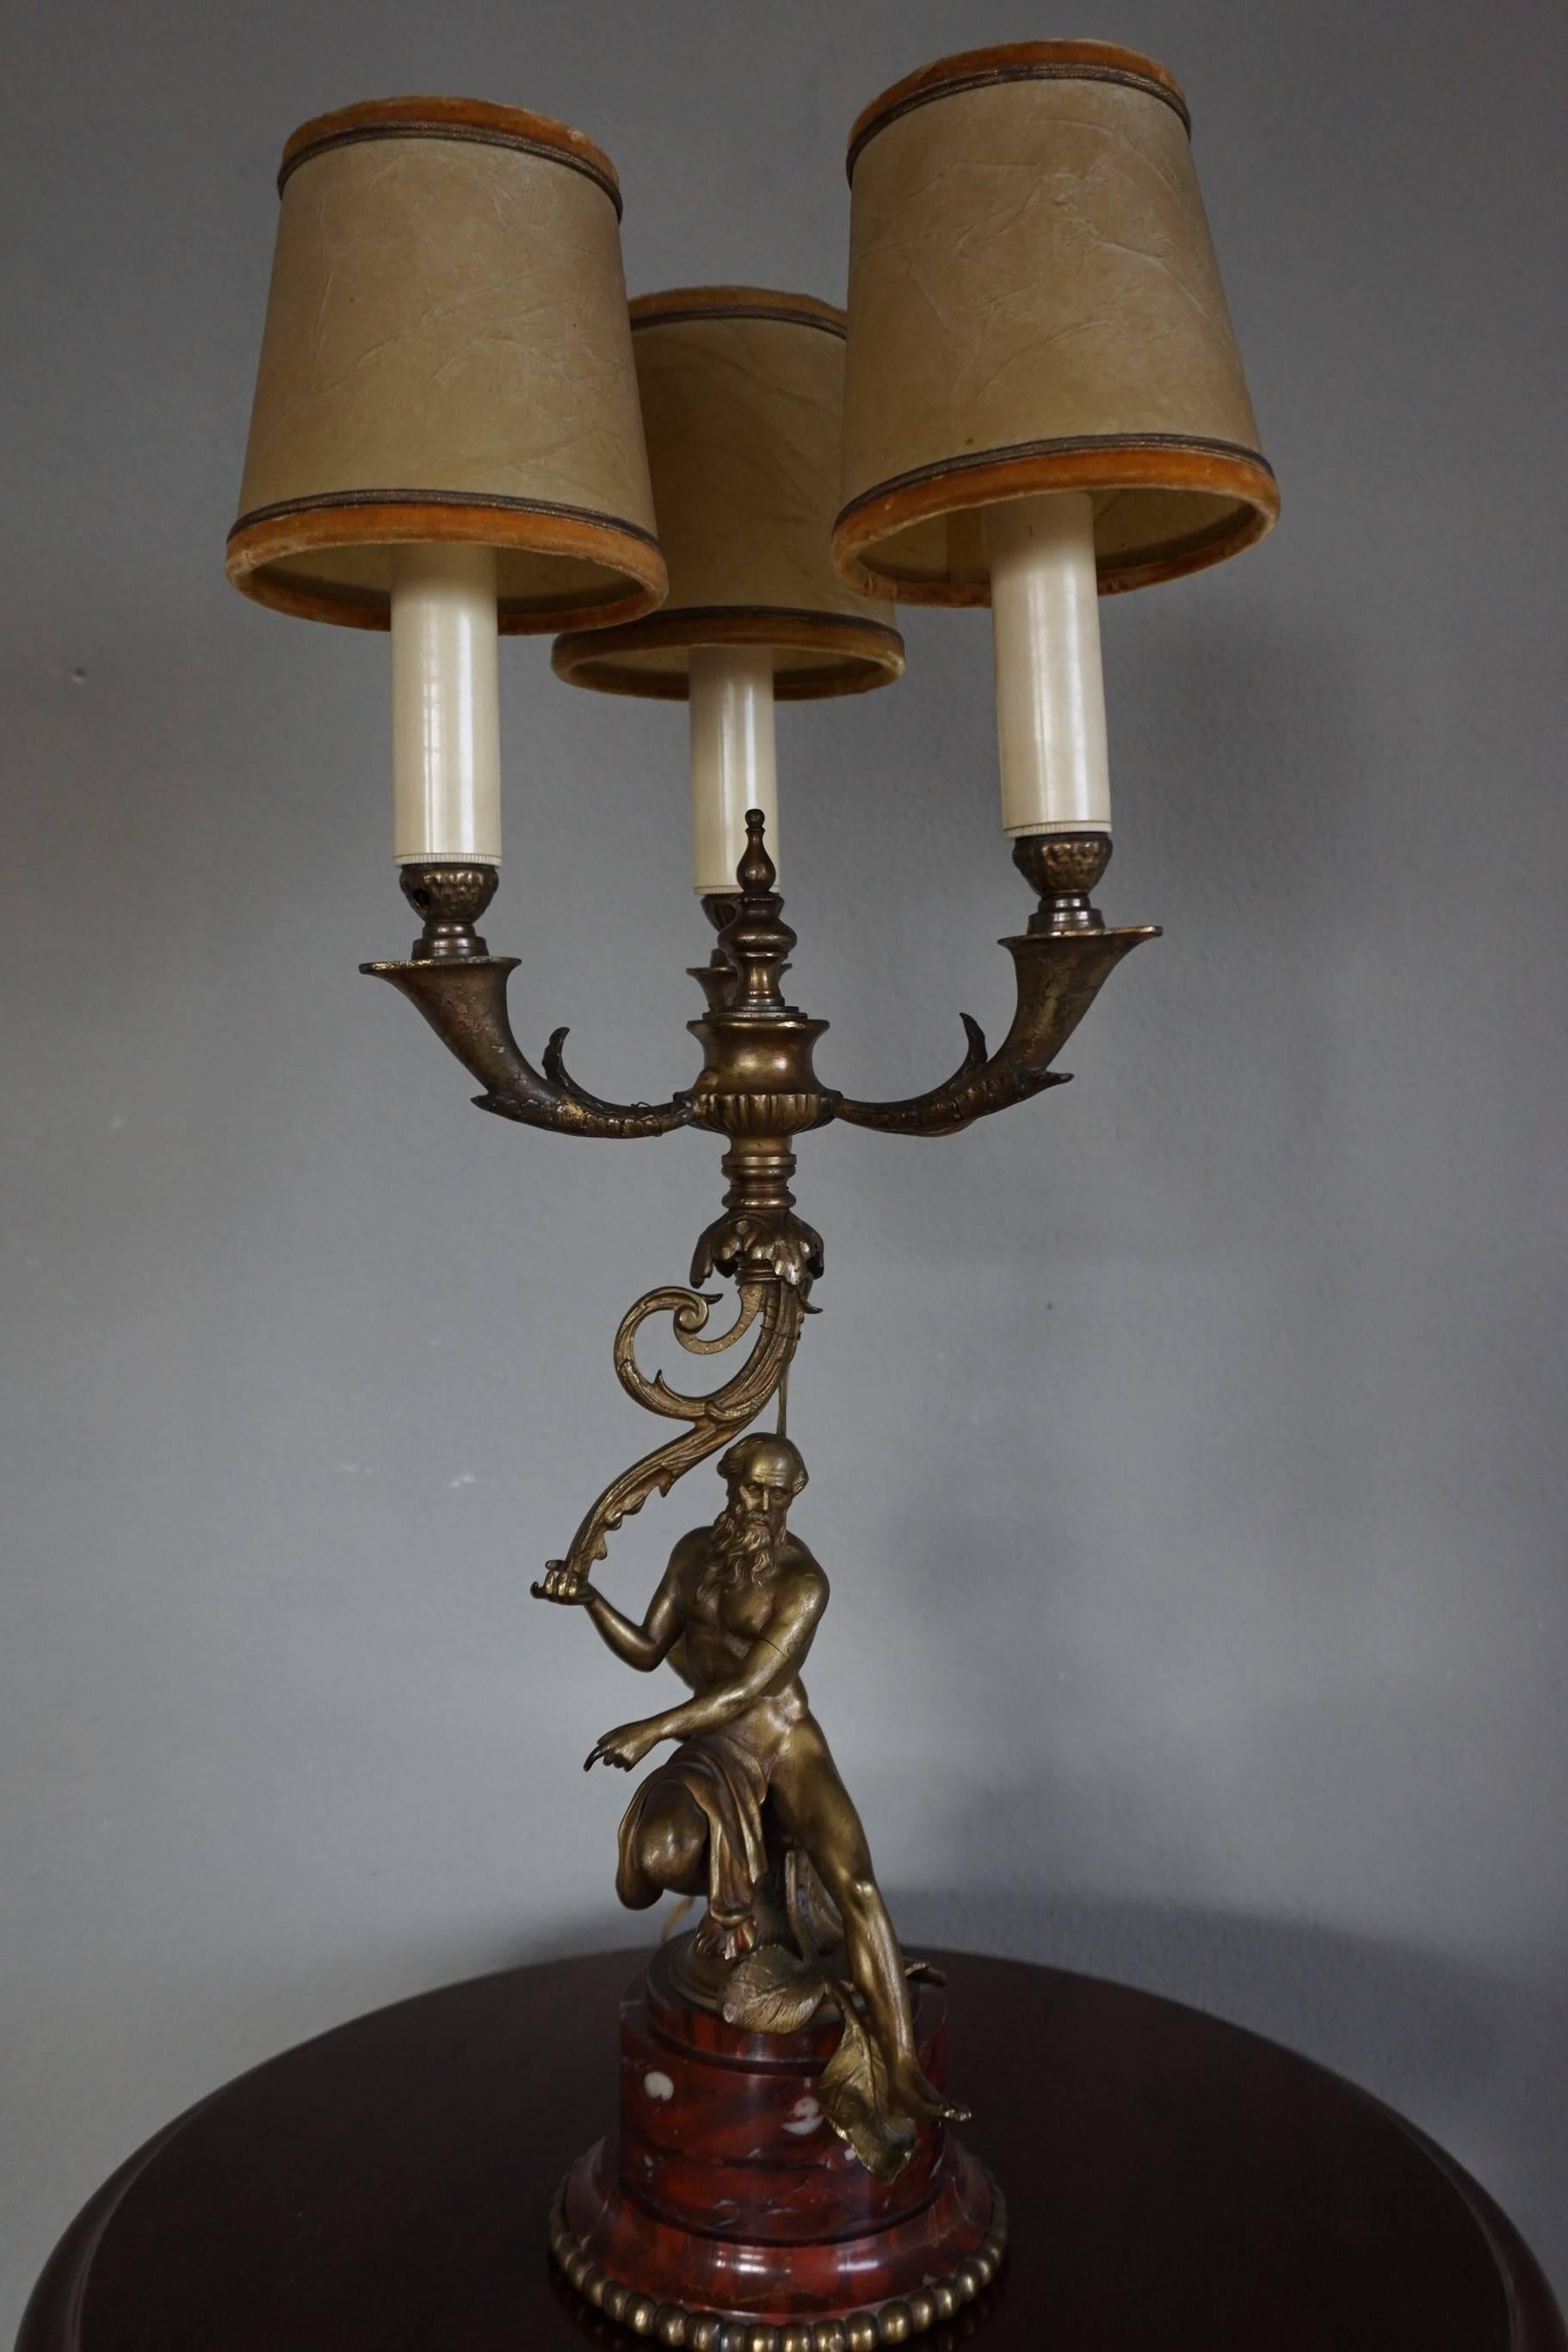 Lampe de table en bronze, unique en son genre et très élégante.

Dans la mythologie grecque, Zeus est surtout connu comme le maître du ciel et de la terre et comme le père de tous les dieux et de l'humanité. Dans cette lampe de table ancienne et de